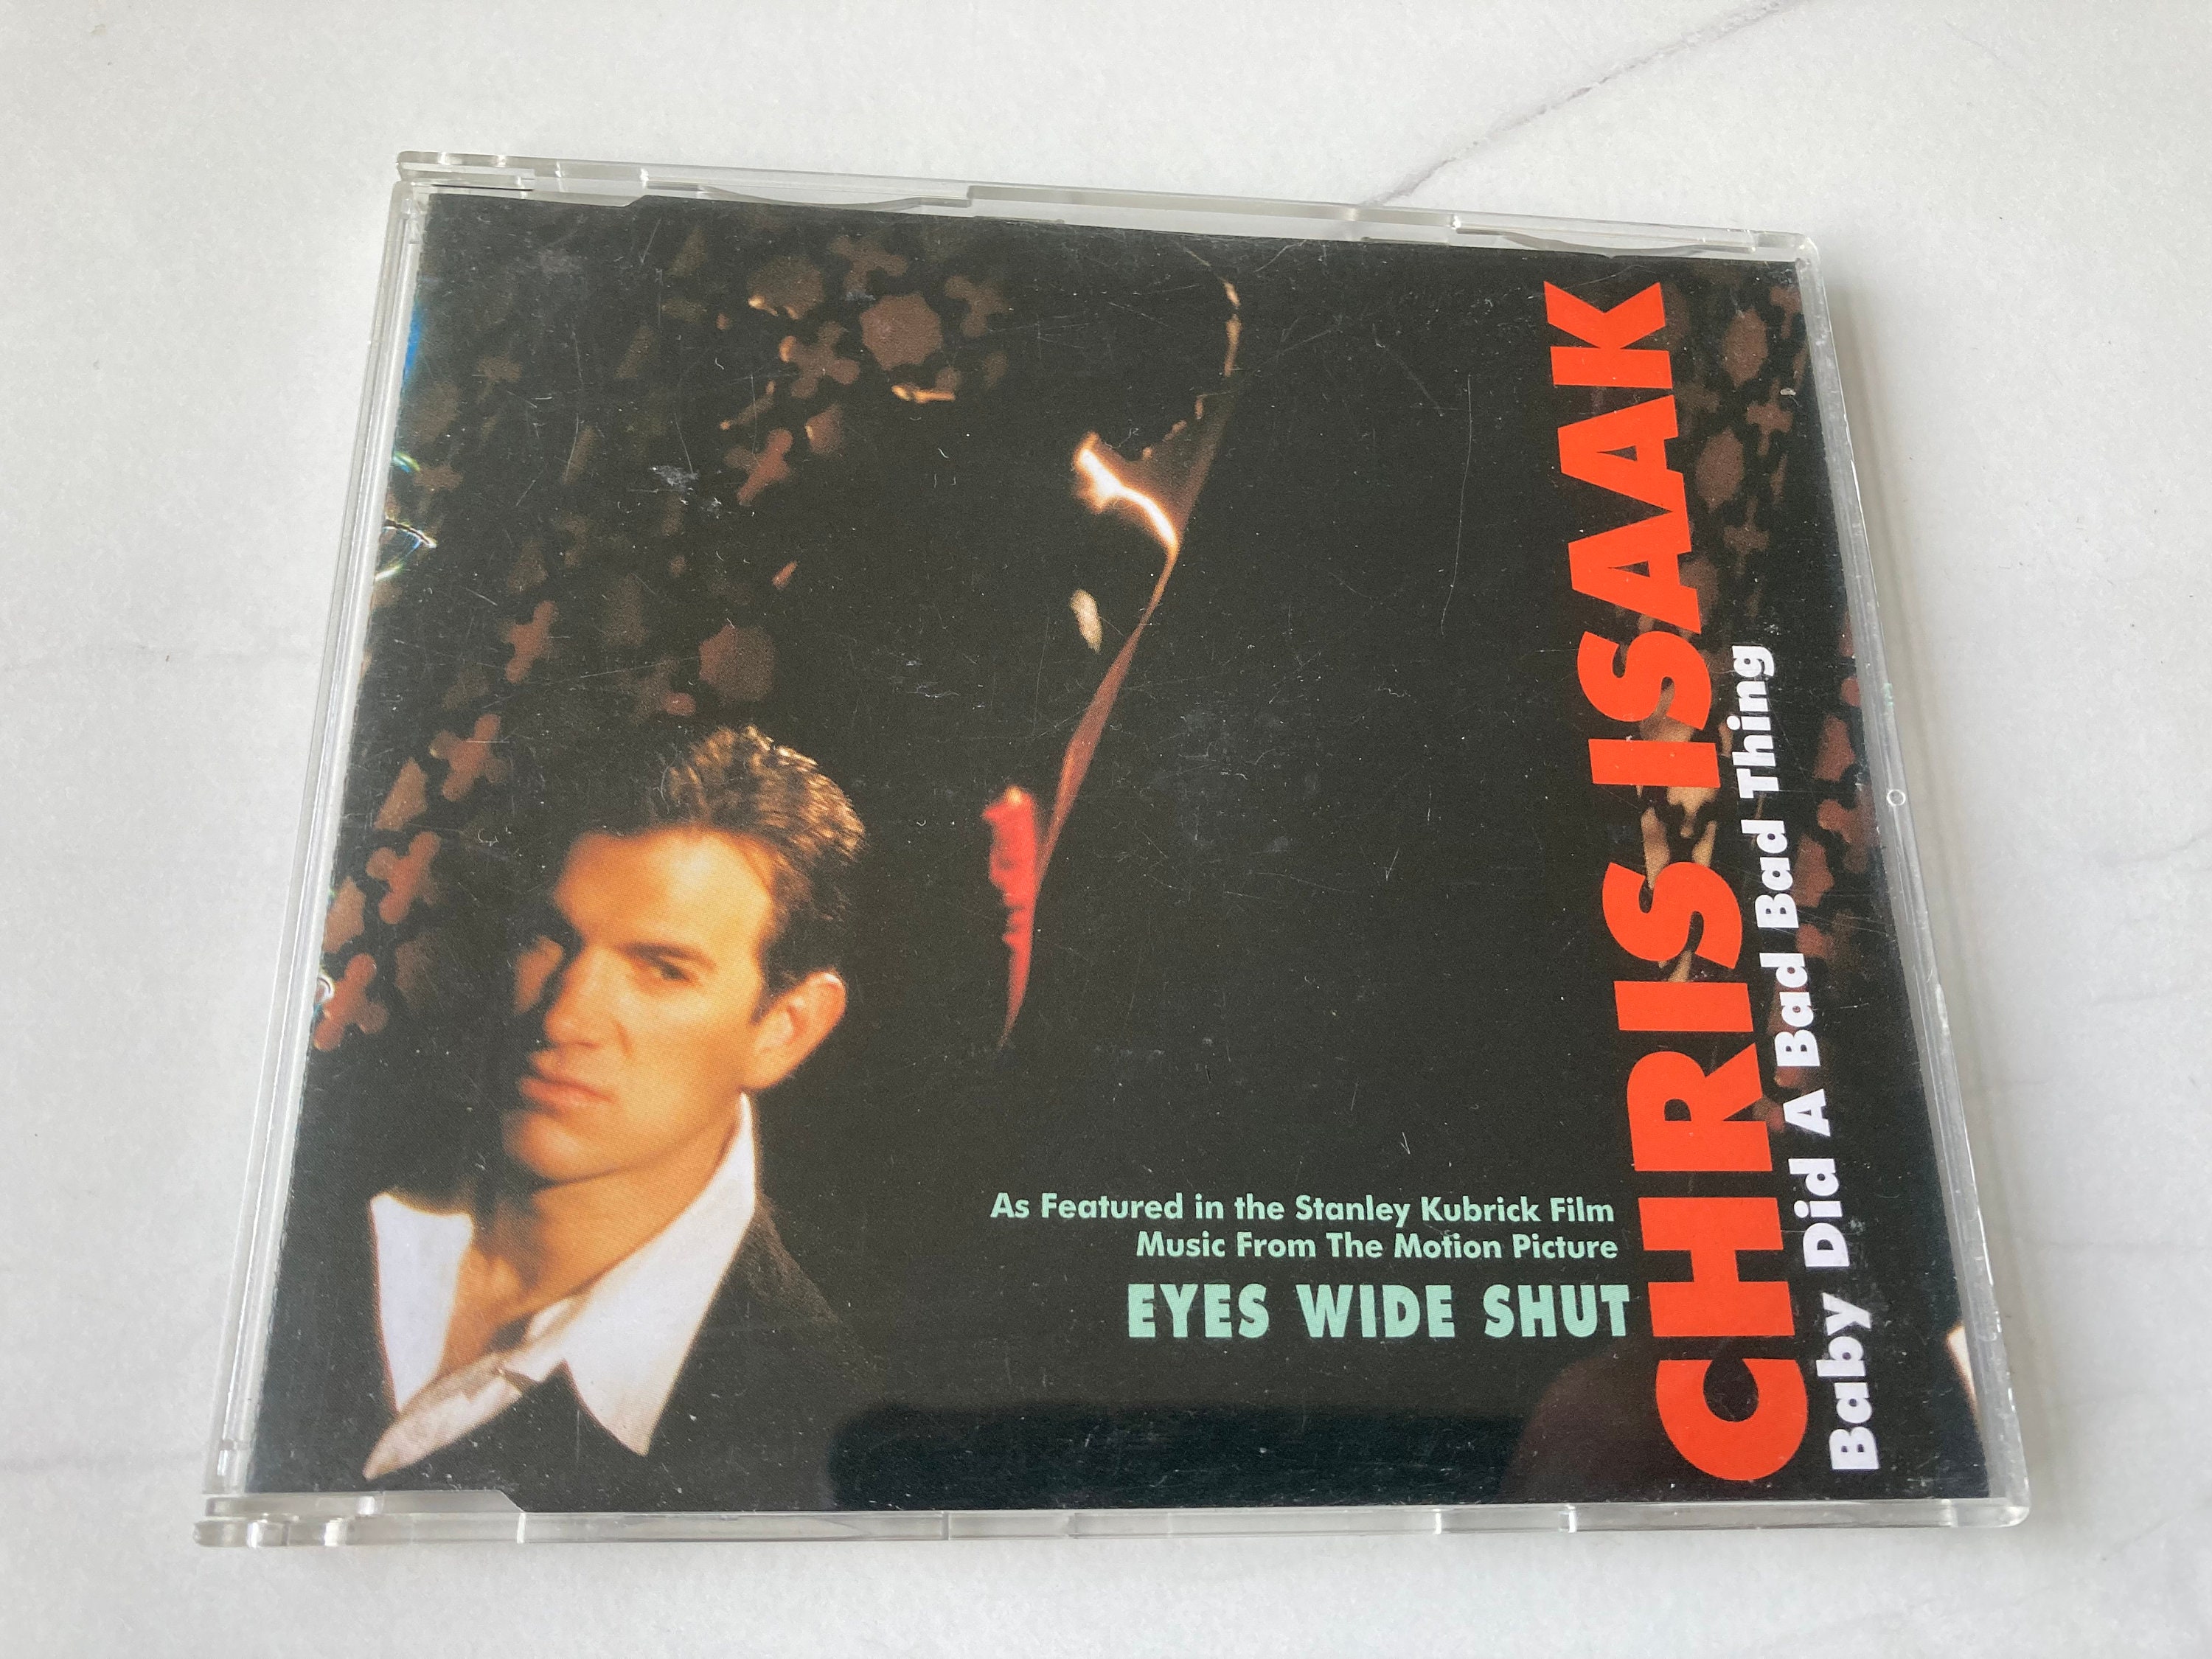 Chris Isaak Did A Bad Bad Thing 1995 CD - Etsy